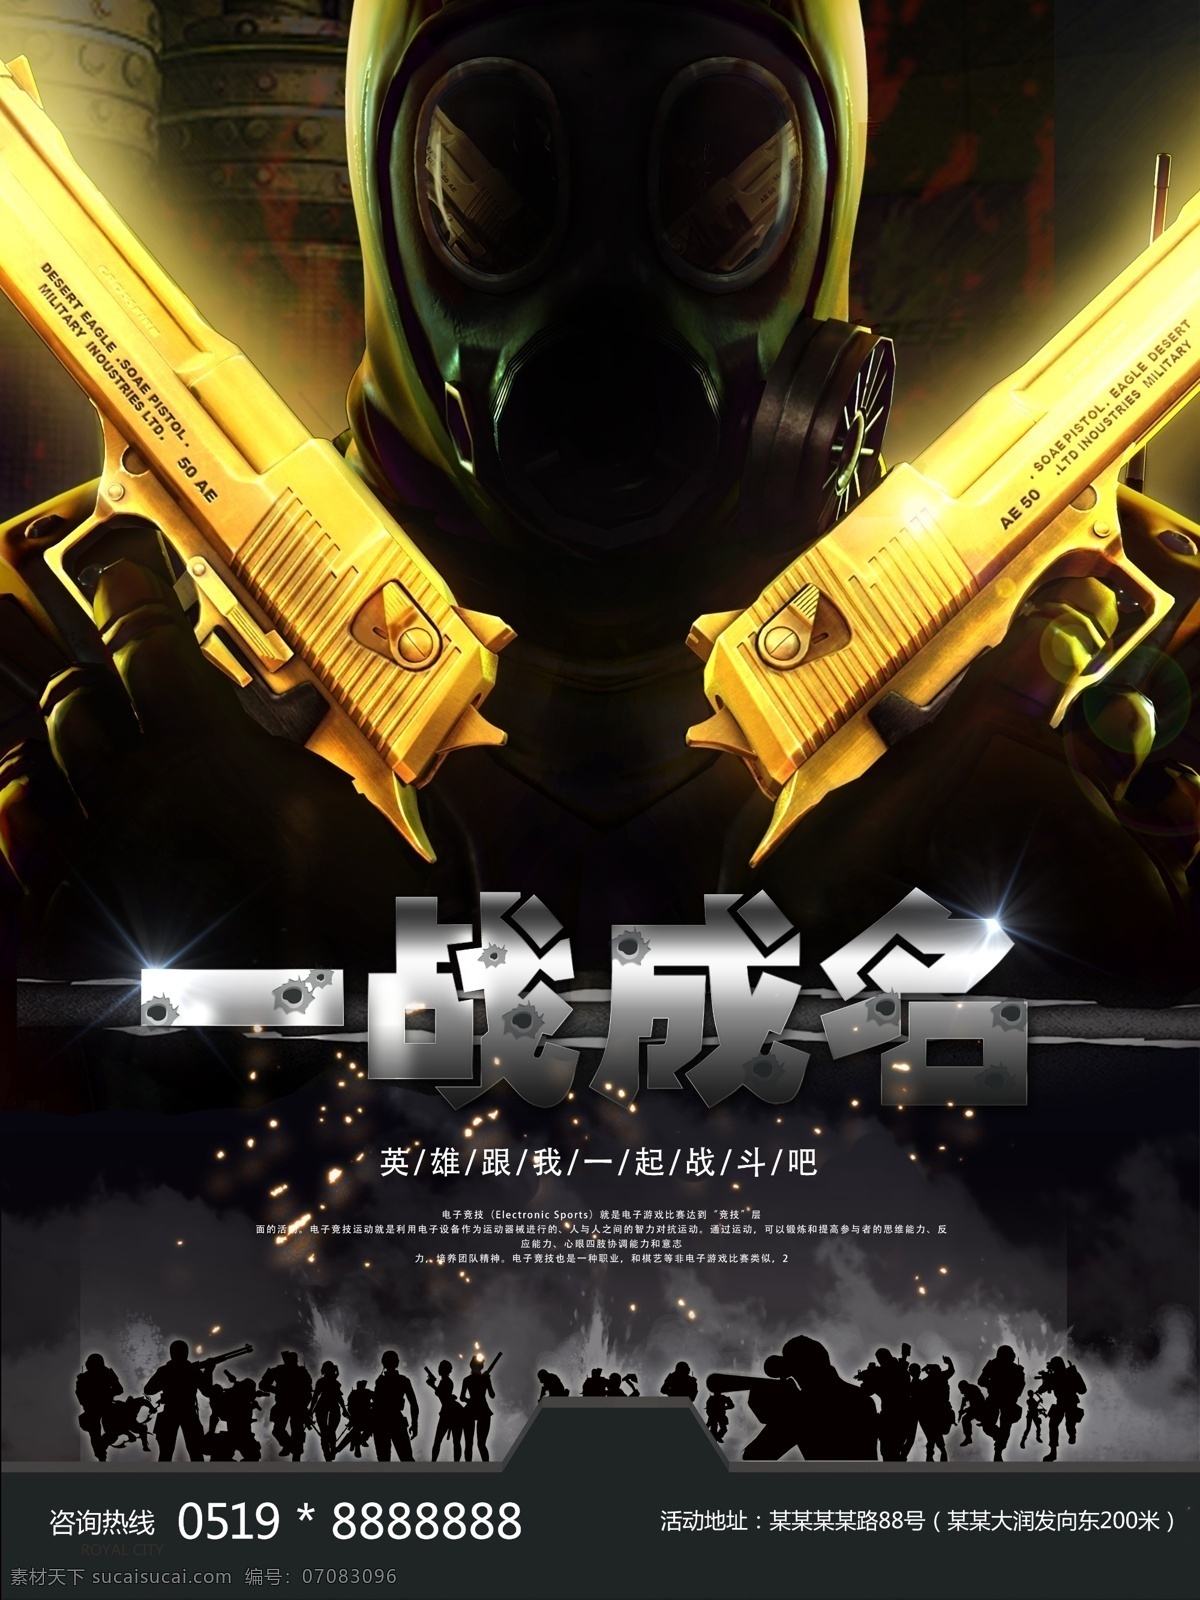 炫 酷 cs 游戏 比赛 海报 一战成名 士兵 黄金枪